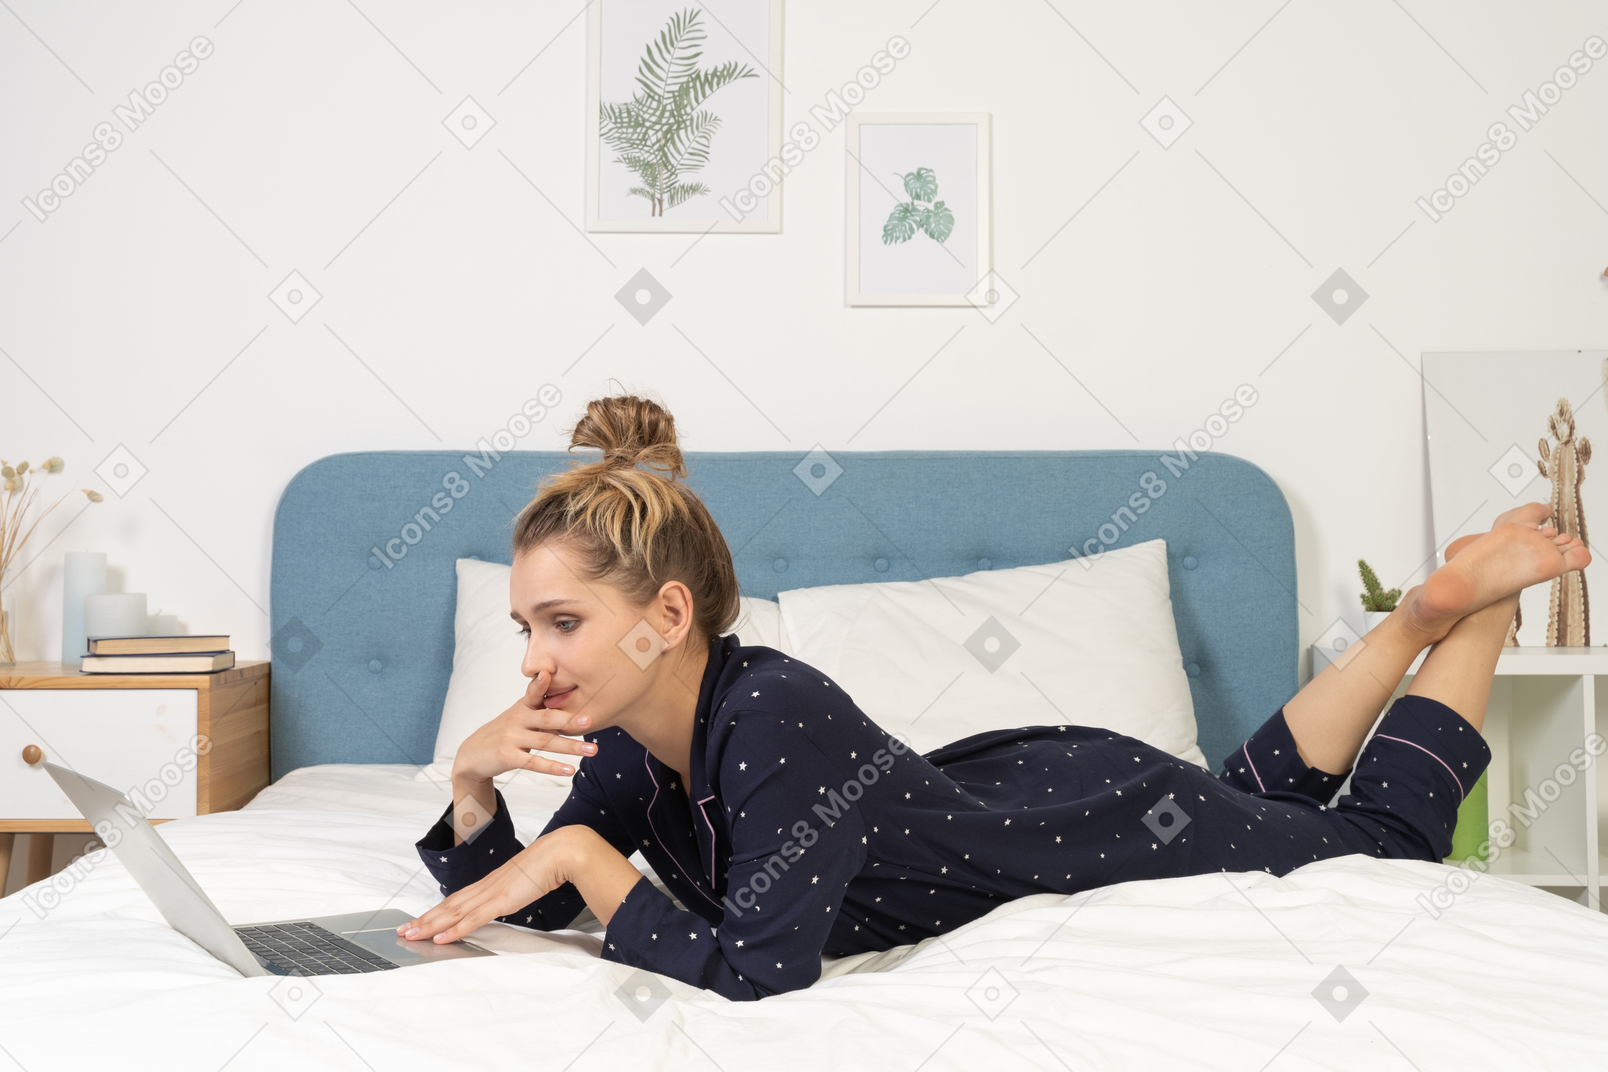 Vue latérale d'une jeune femme allongée dans son lit avec son ordinateur portable